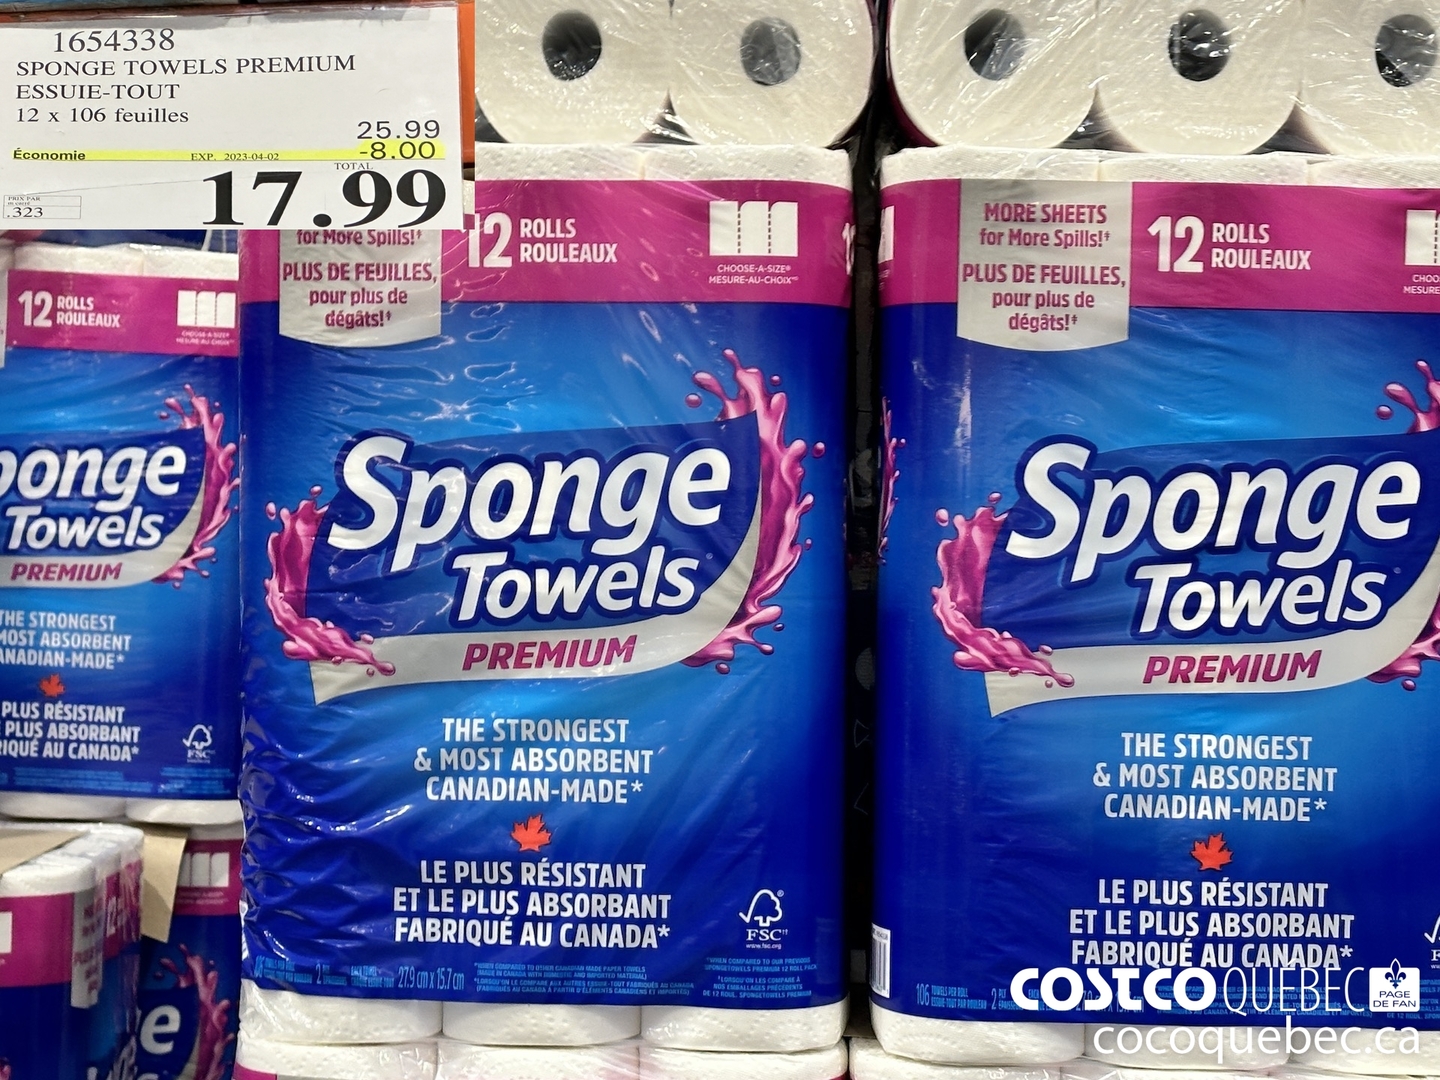 Essuie-tout ultra, 6 unités – Sponge Towels : Essuie-tout